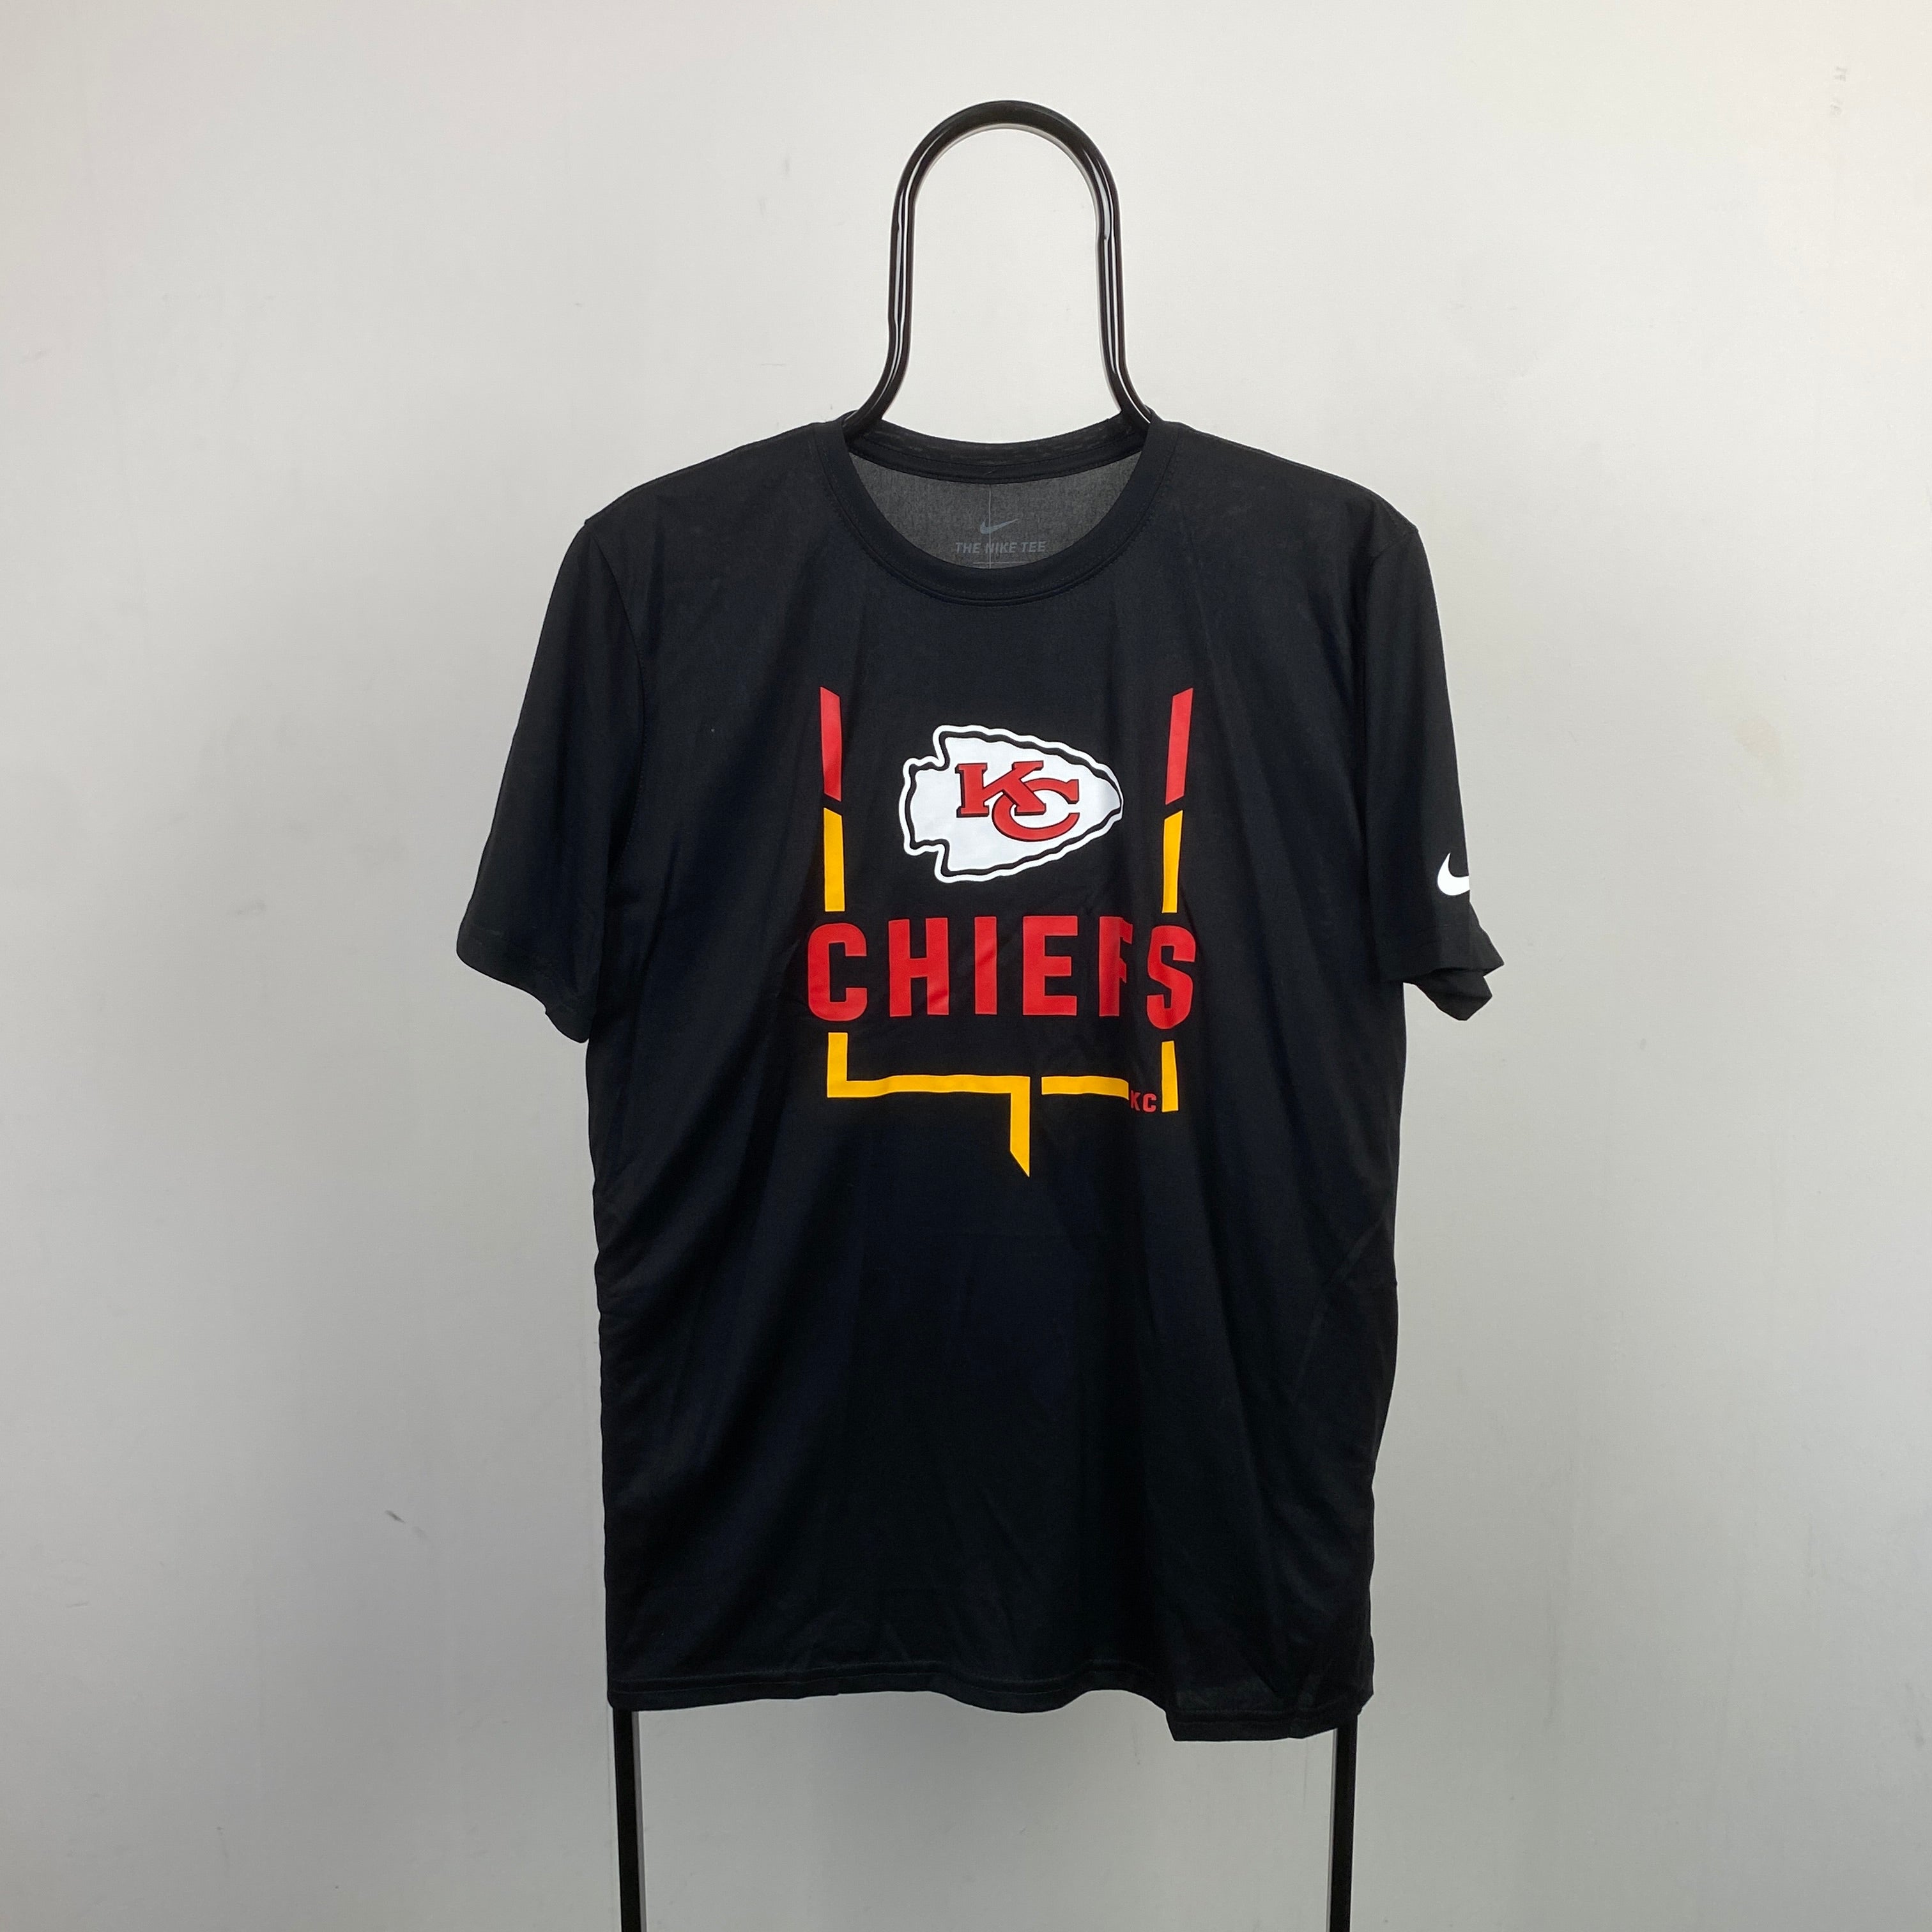 00s Nike Kansas City Chiefs T-Shirt Black Medium